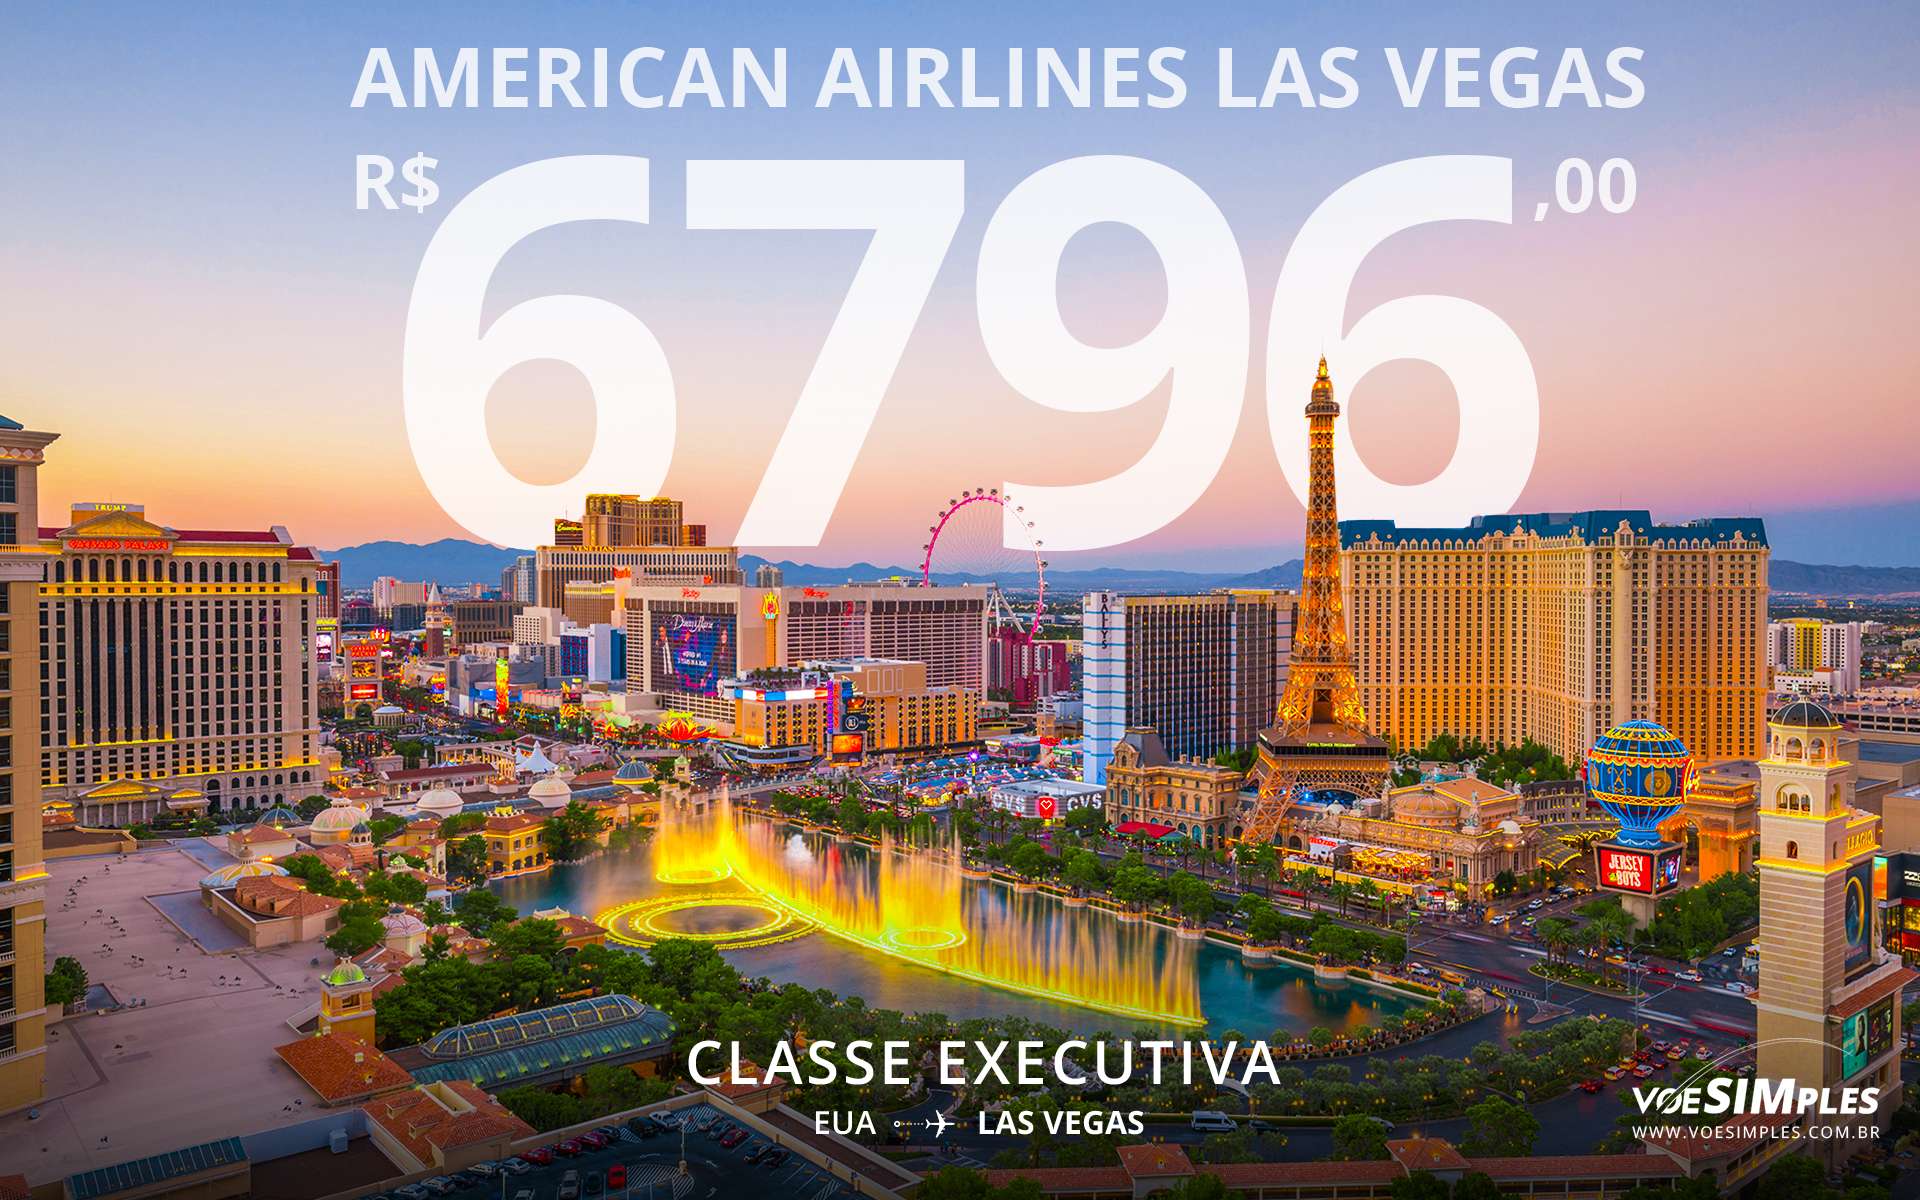 passagem aérea classe executiva American Airlines